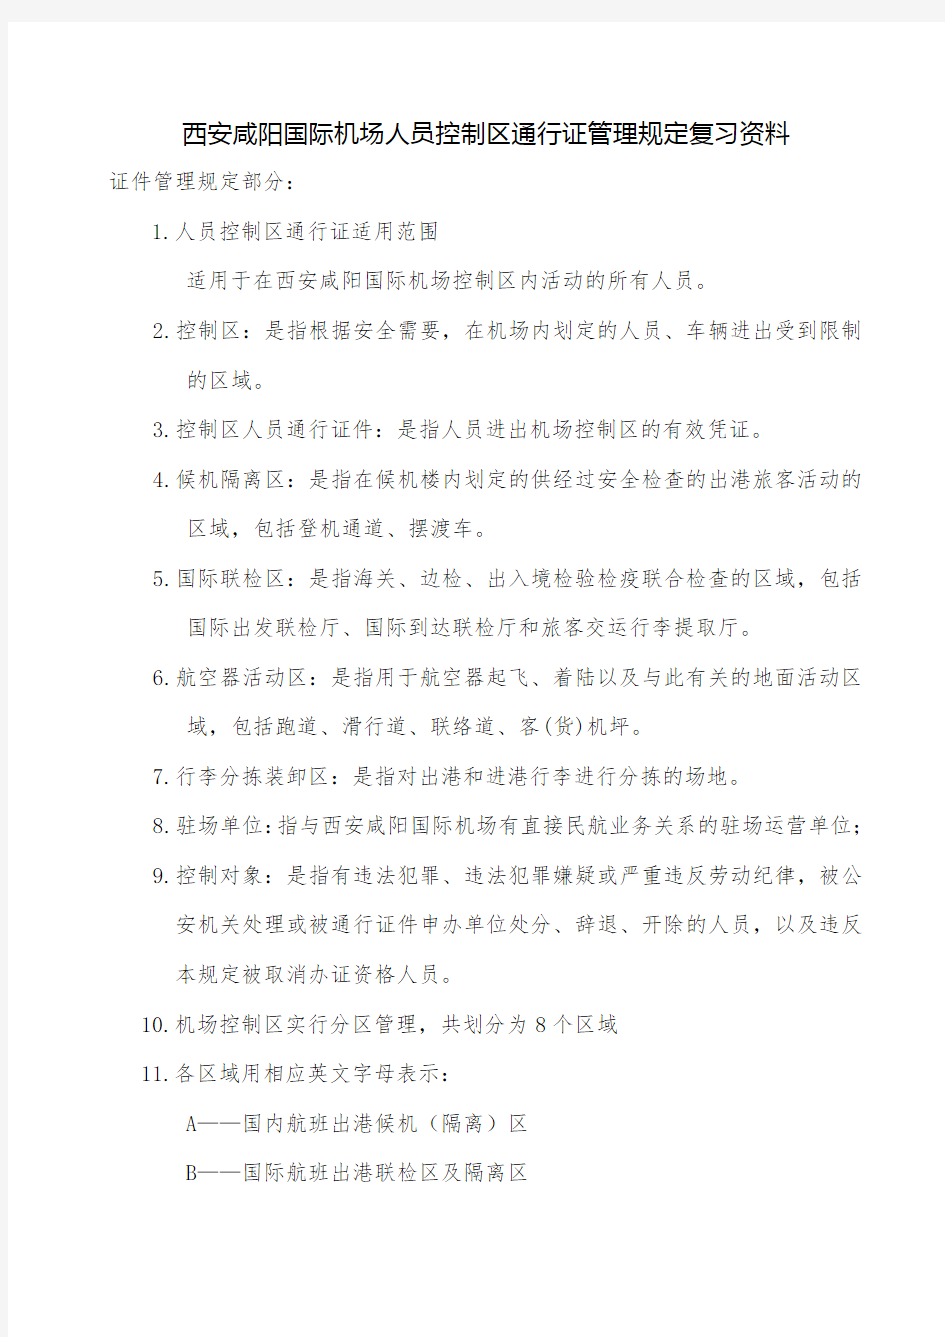 西安咸阳国际机场人员控制区通行证管理规定复习资料